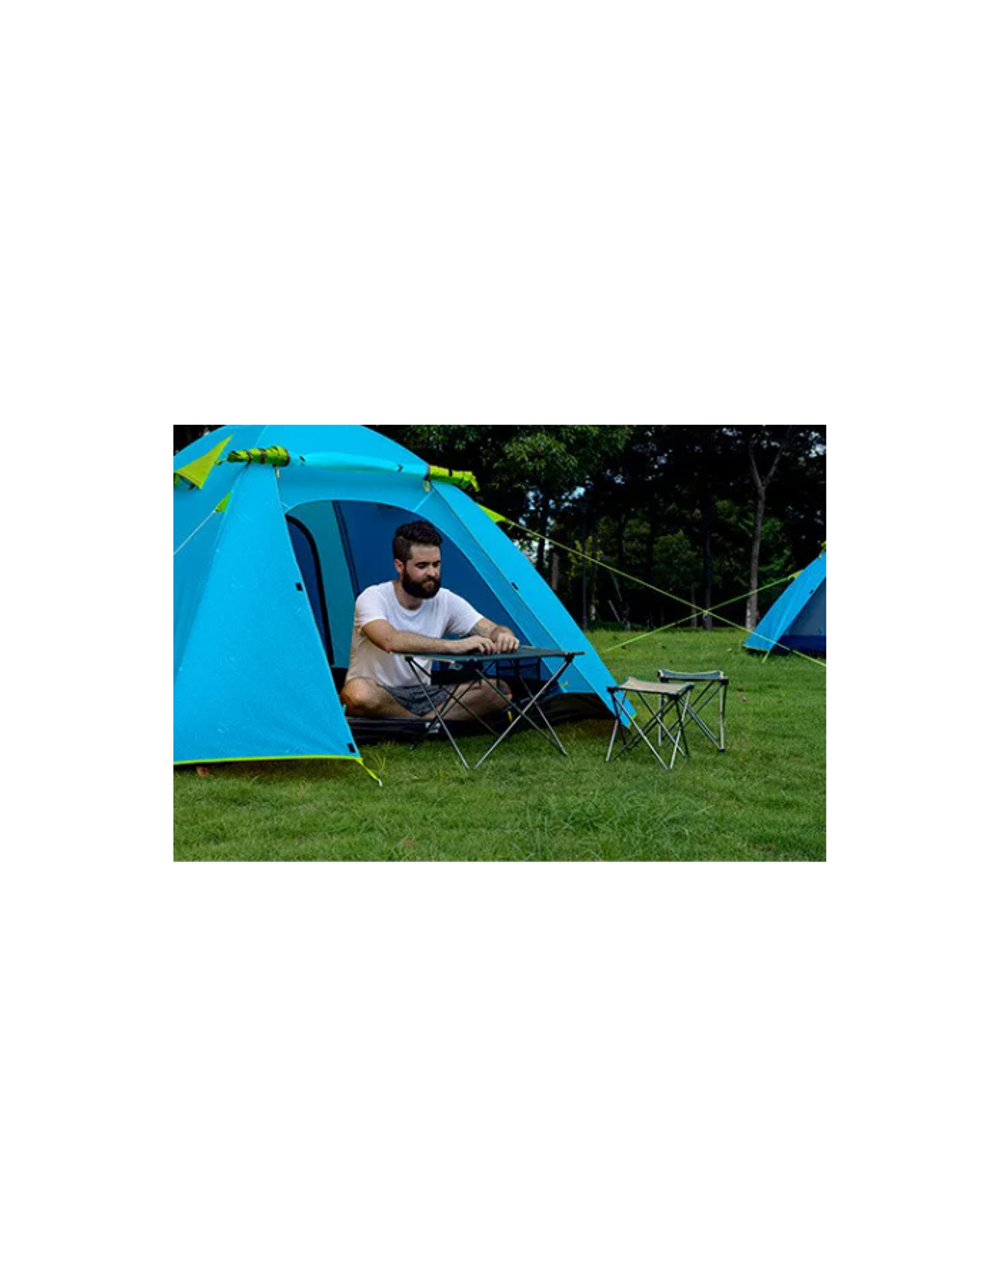 Палатка Naturehike P-Series 4-местная, алюминиевый каркас, голубая